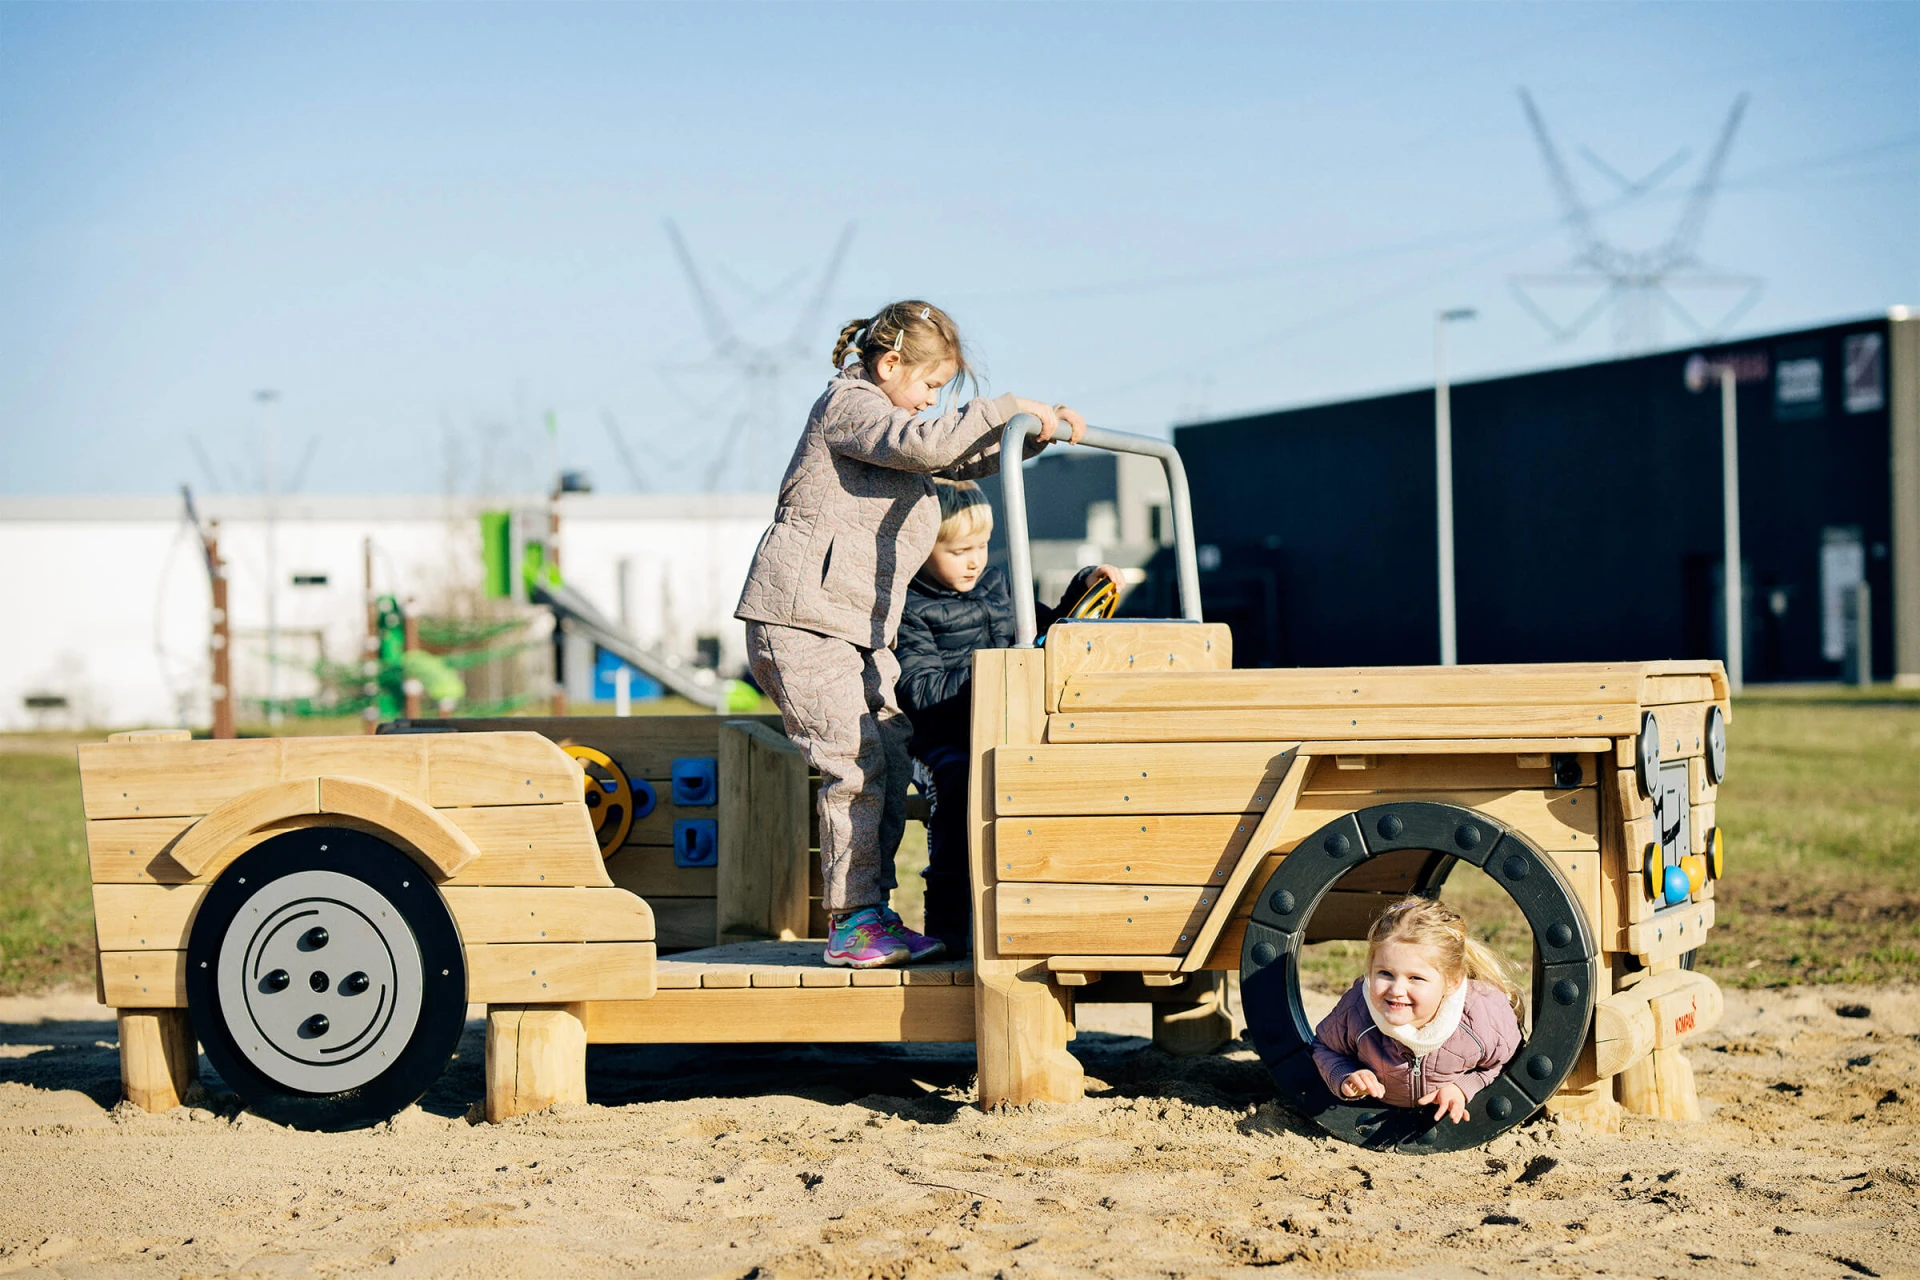  Enfants jouant sur une voiture de jeu en bois à thème